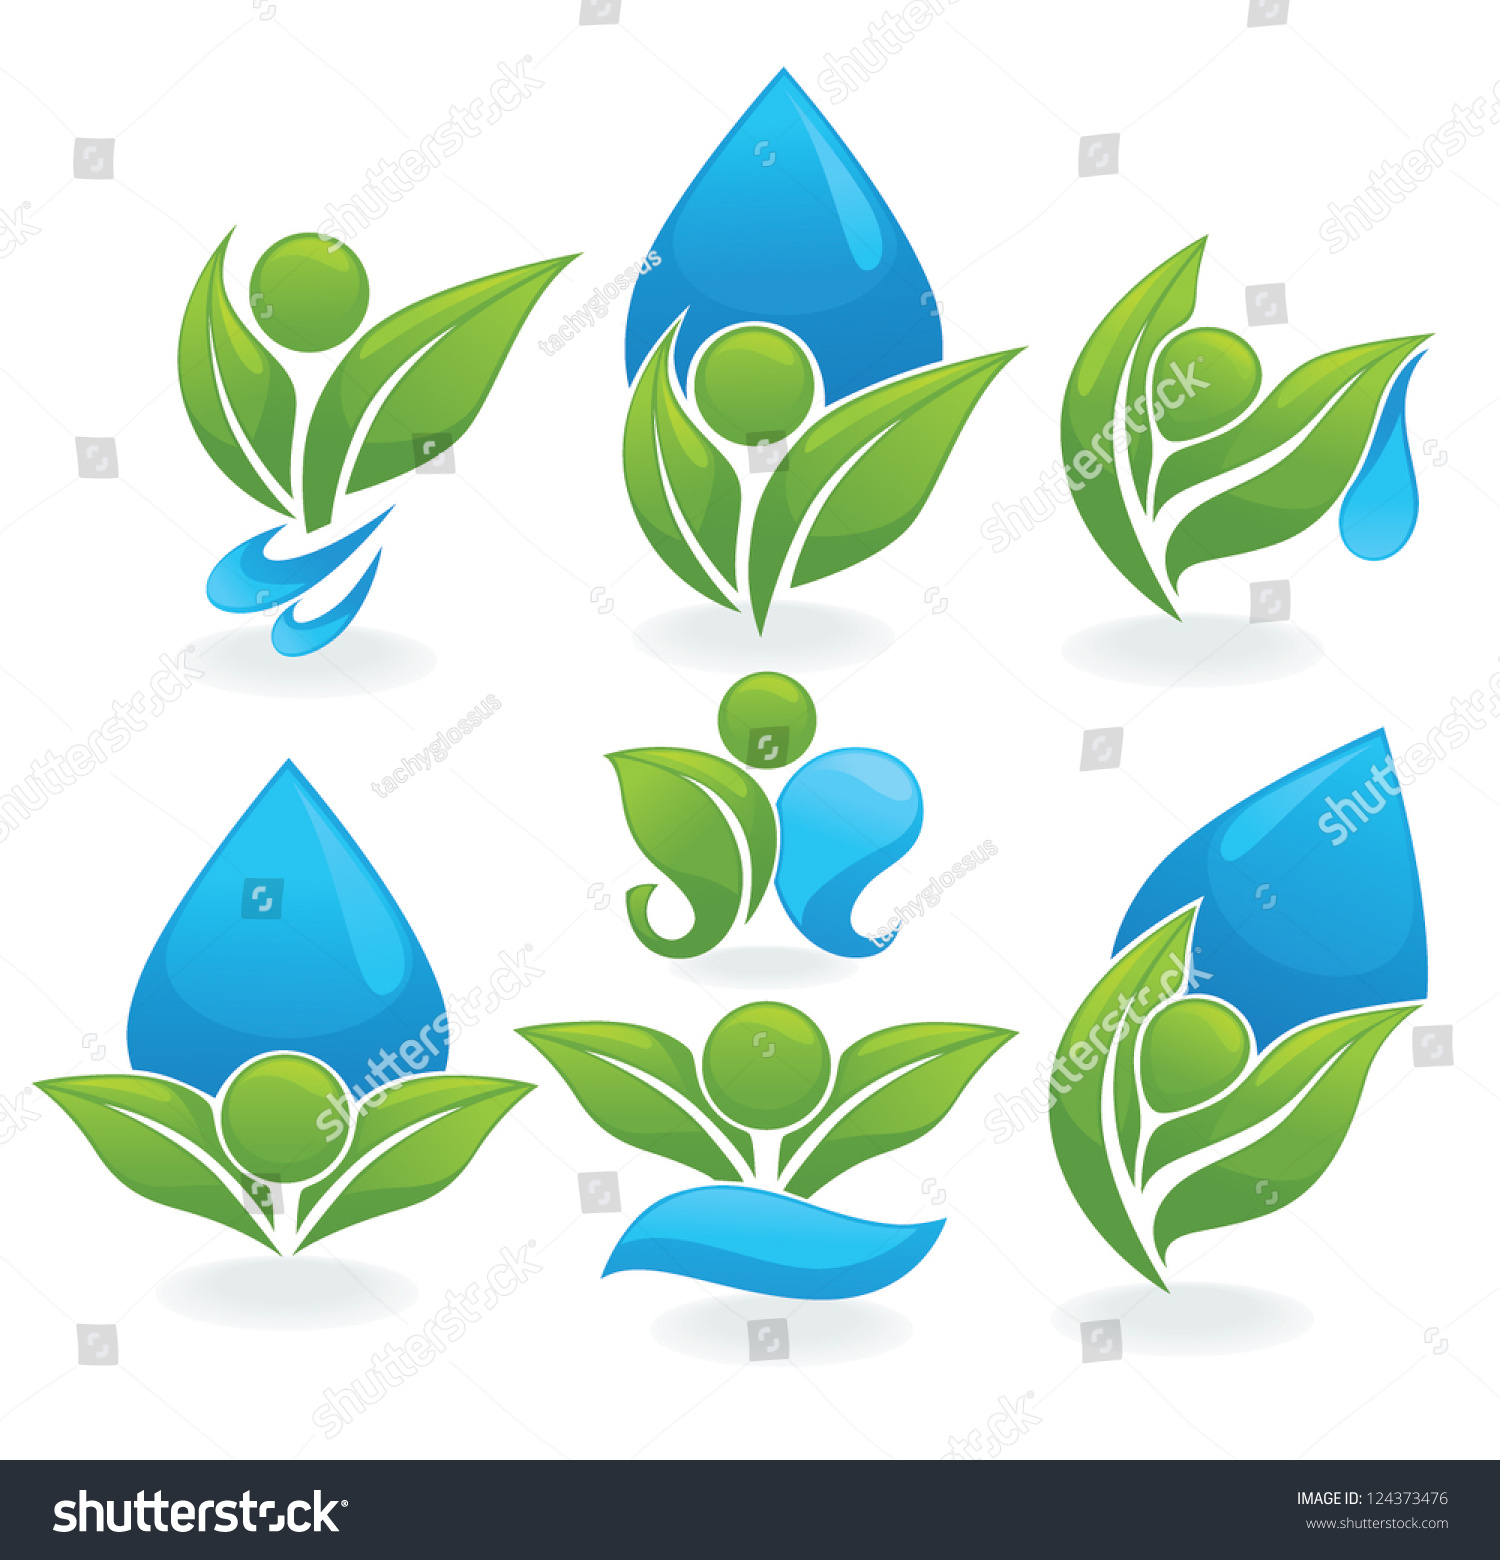 drop-leaves-vector-collection-ecological-signs-vector-de-stock-libre